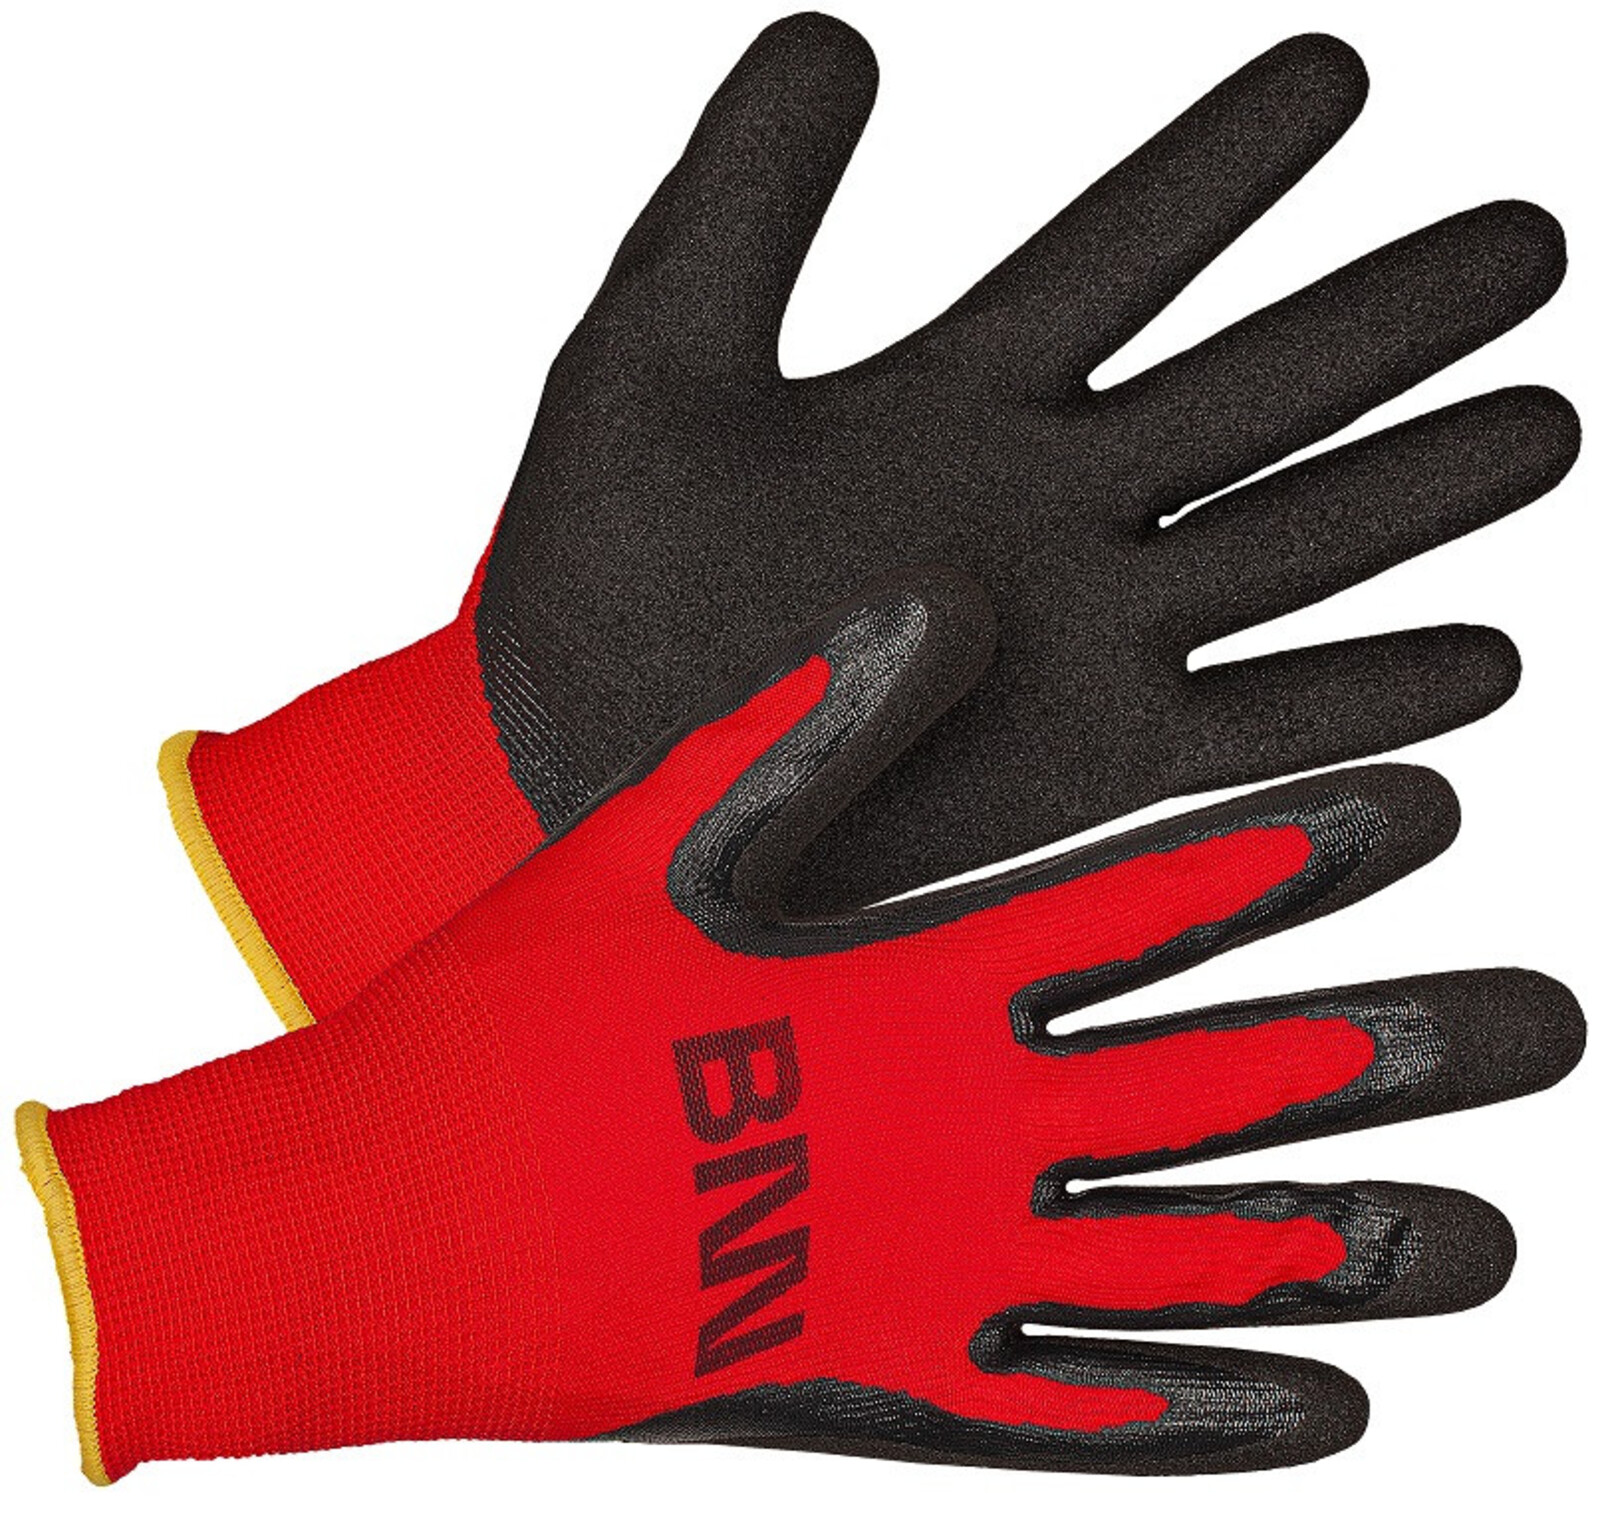 Nitrilové rukavice Bennon Manos - veľkosť: 9/L, farba: čierna/červená